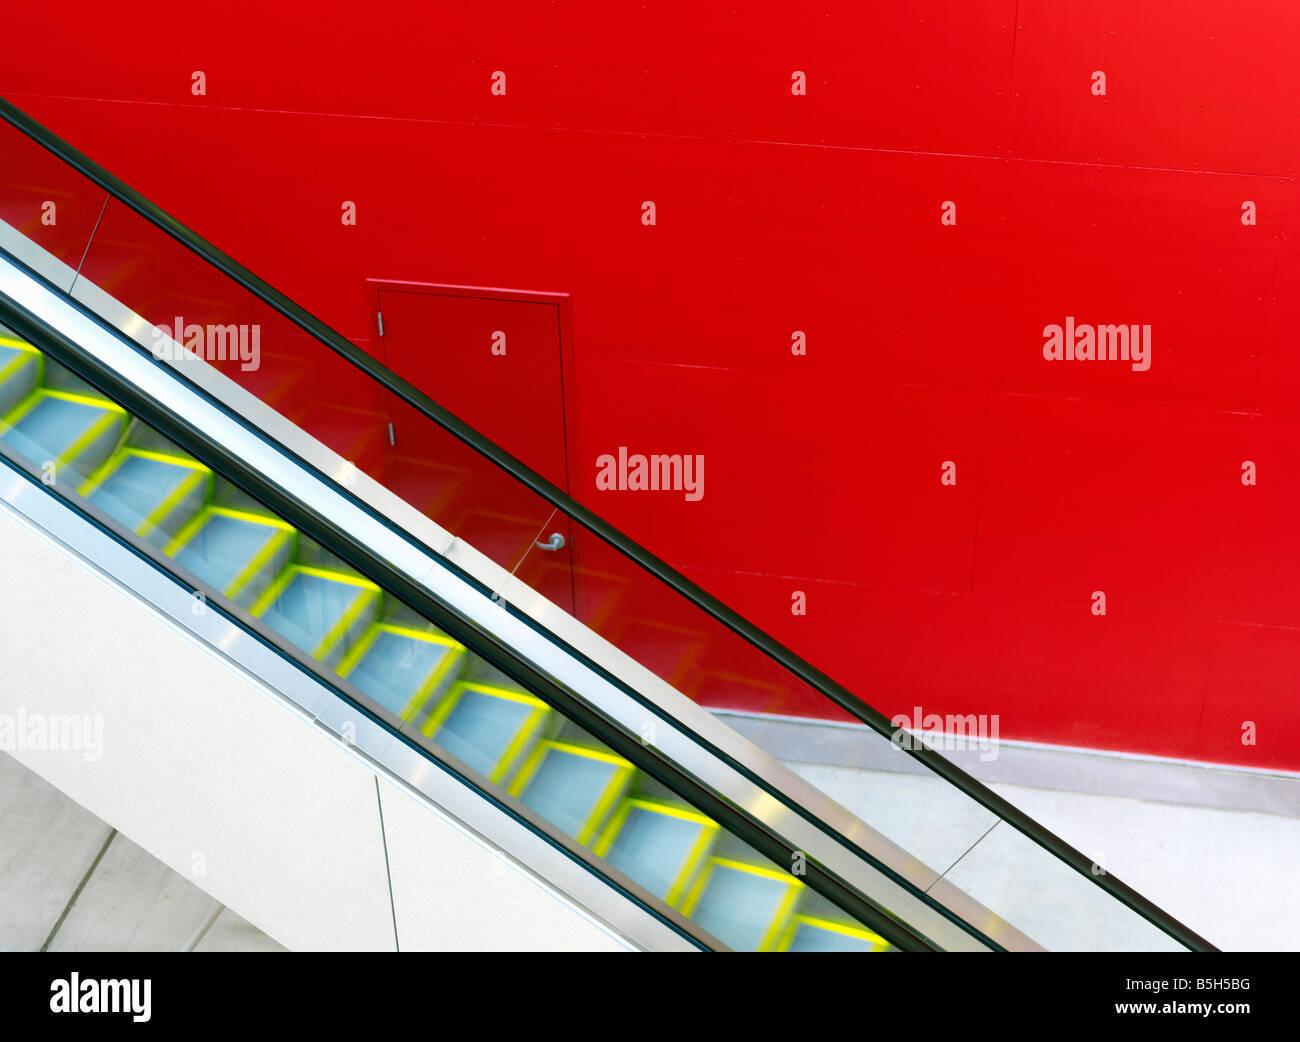 Stati Uniti d'America,Texas,Houston,escalator contro un rosso parete dipinta Foto Stock